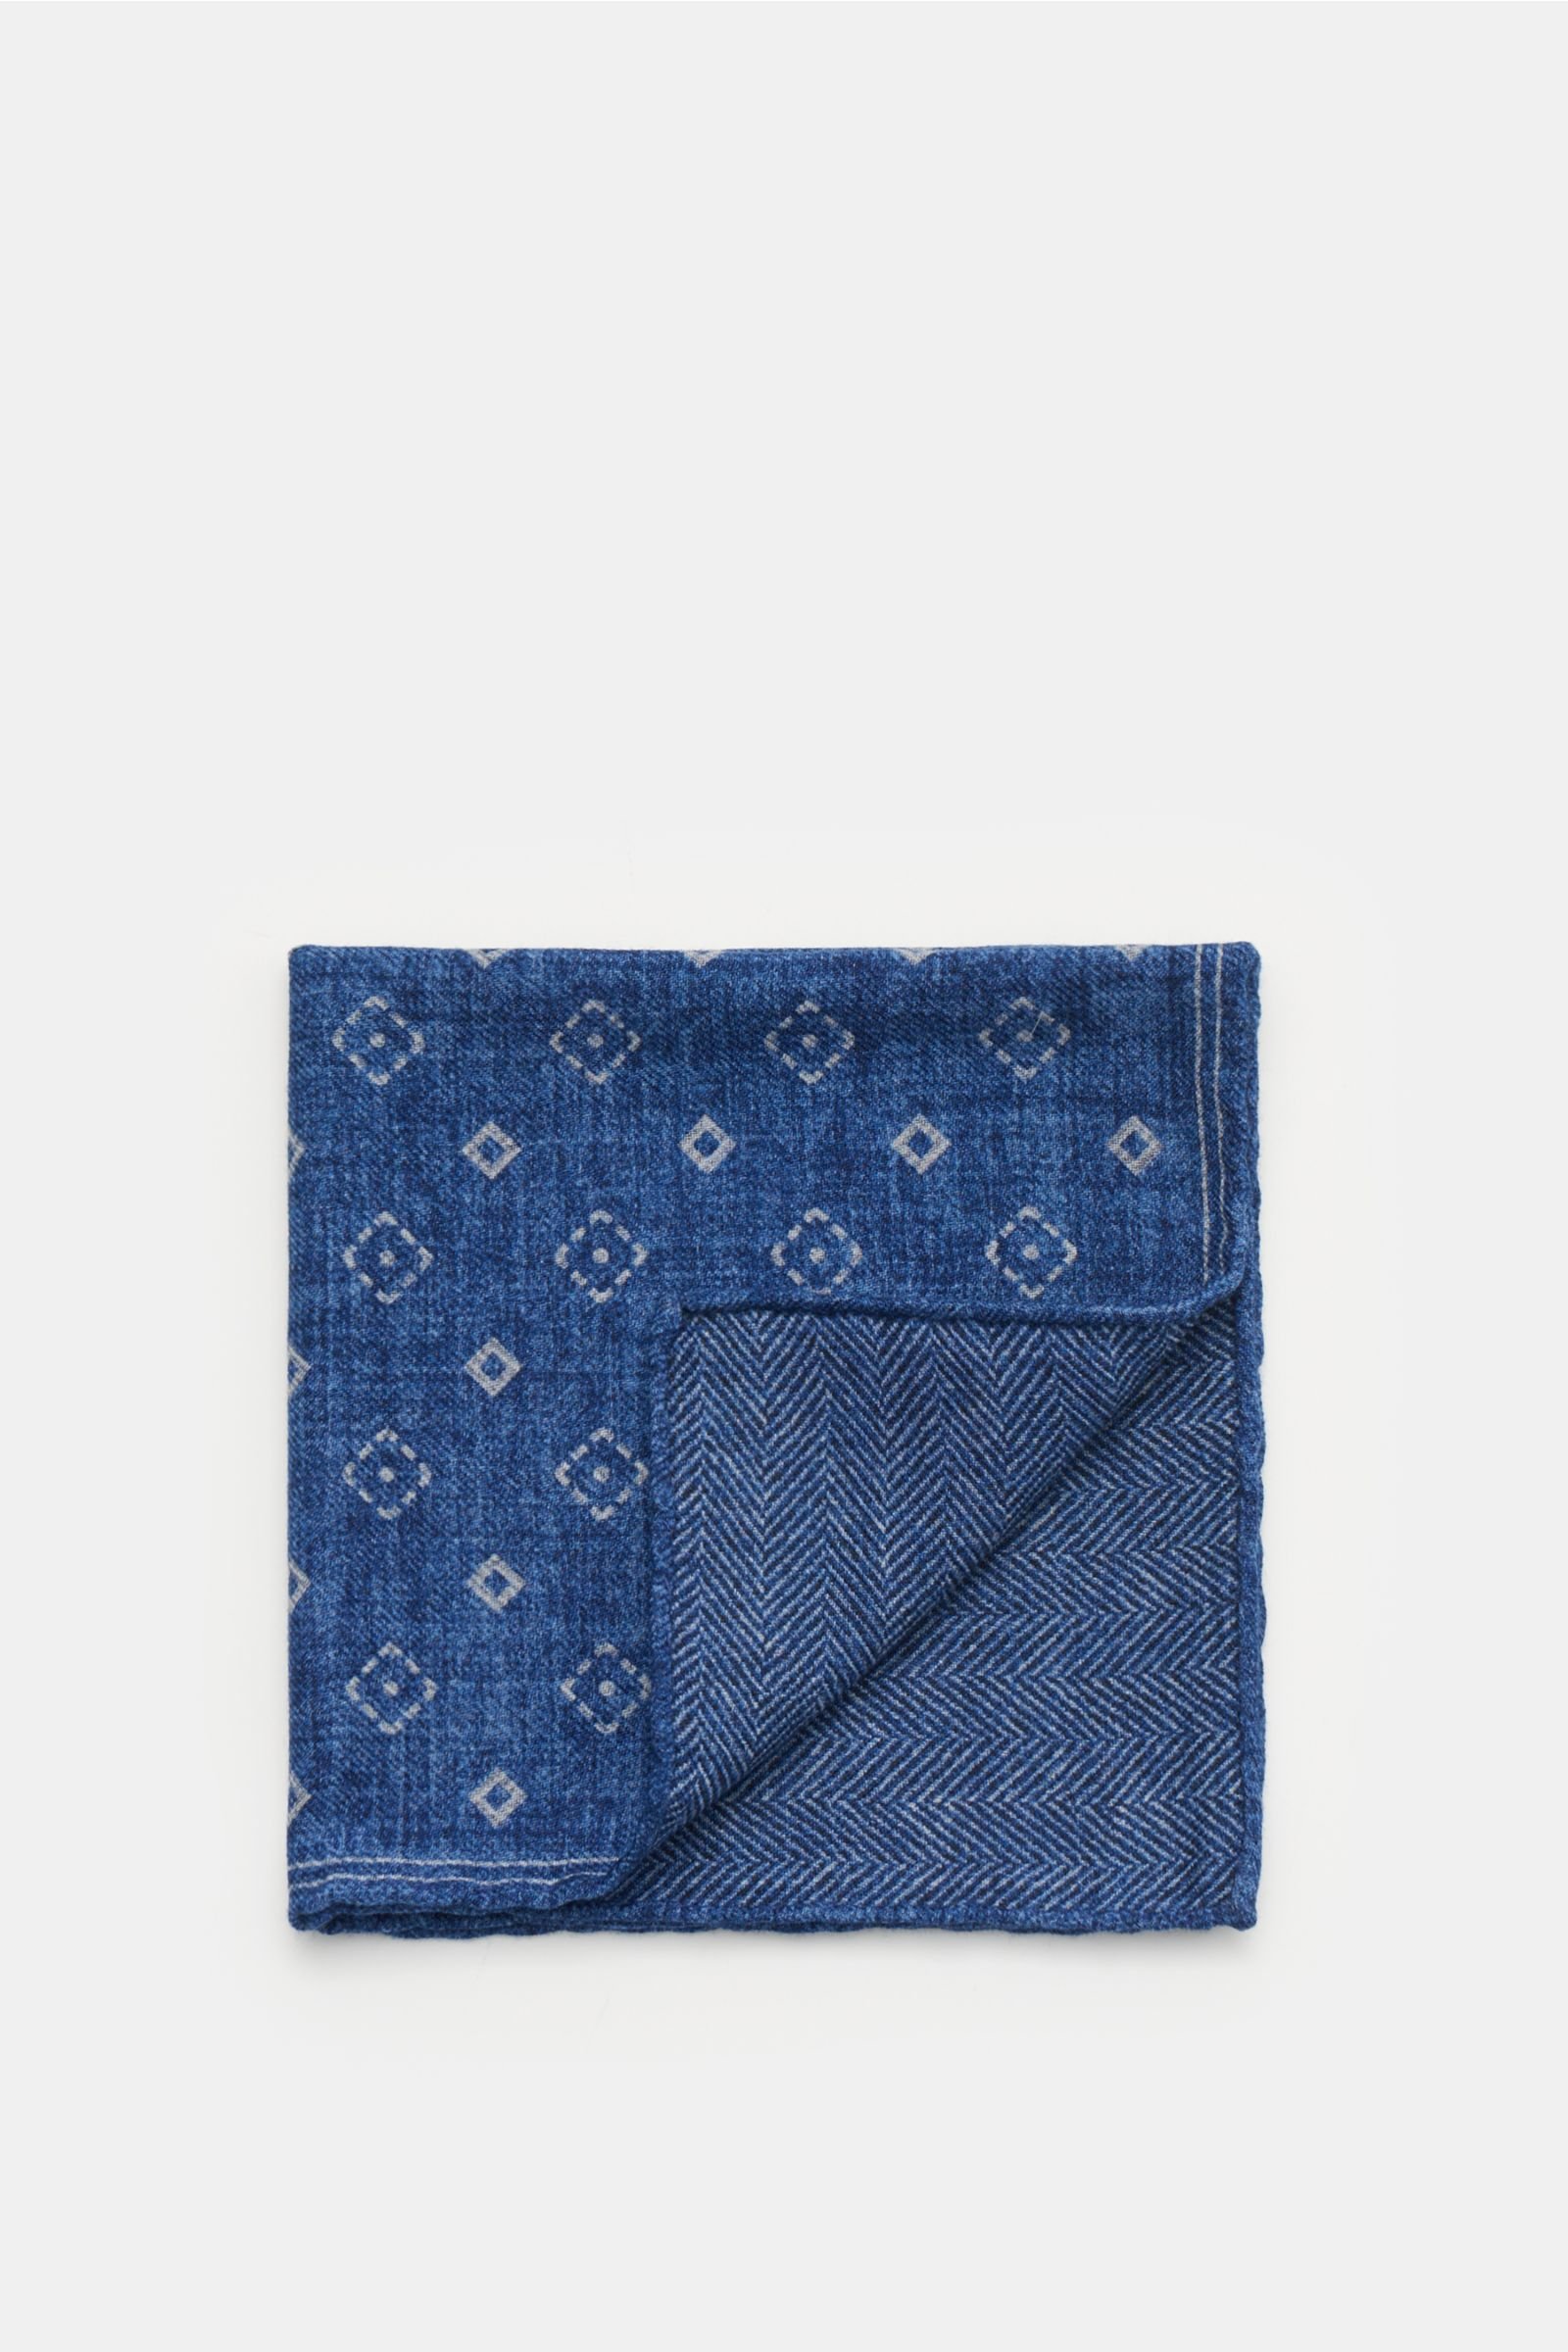 Pocket square grey-blue patterned